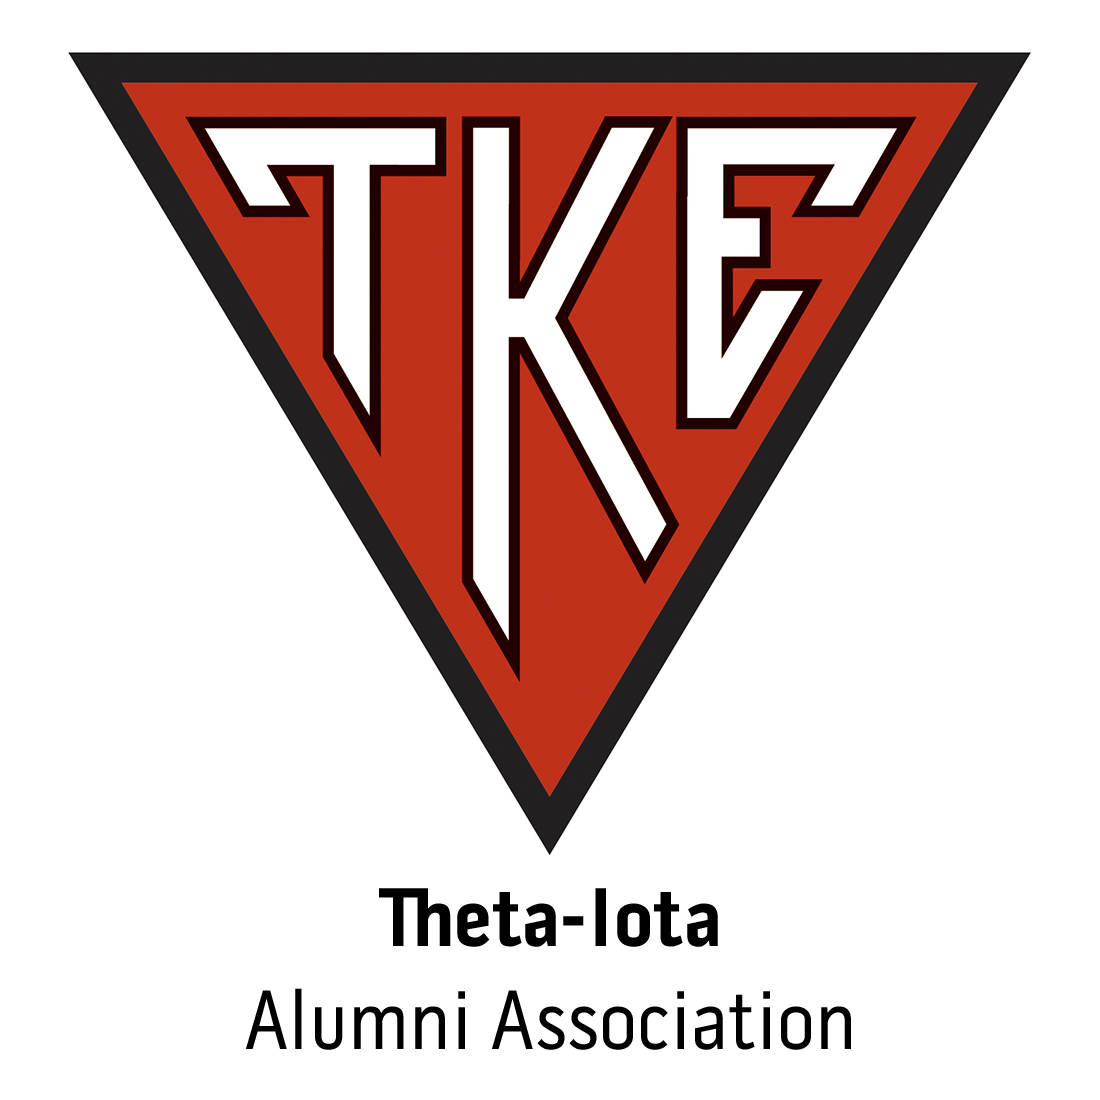 Theta-Iota Alumni Association for Northern Michigan University